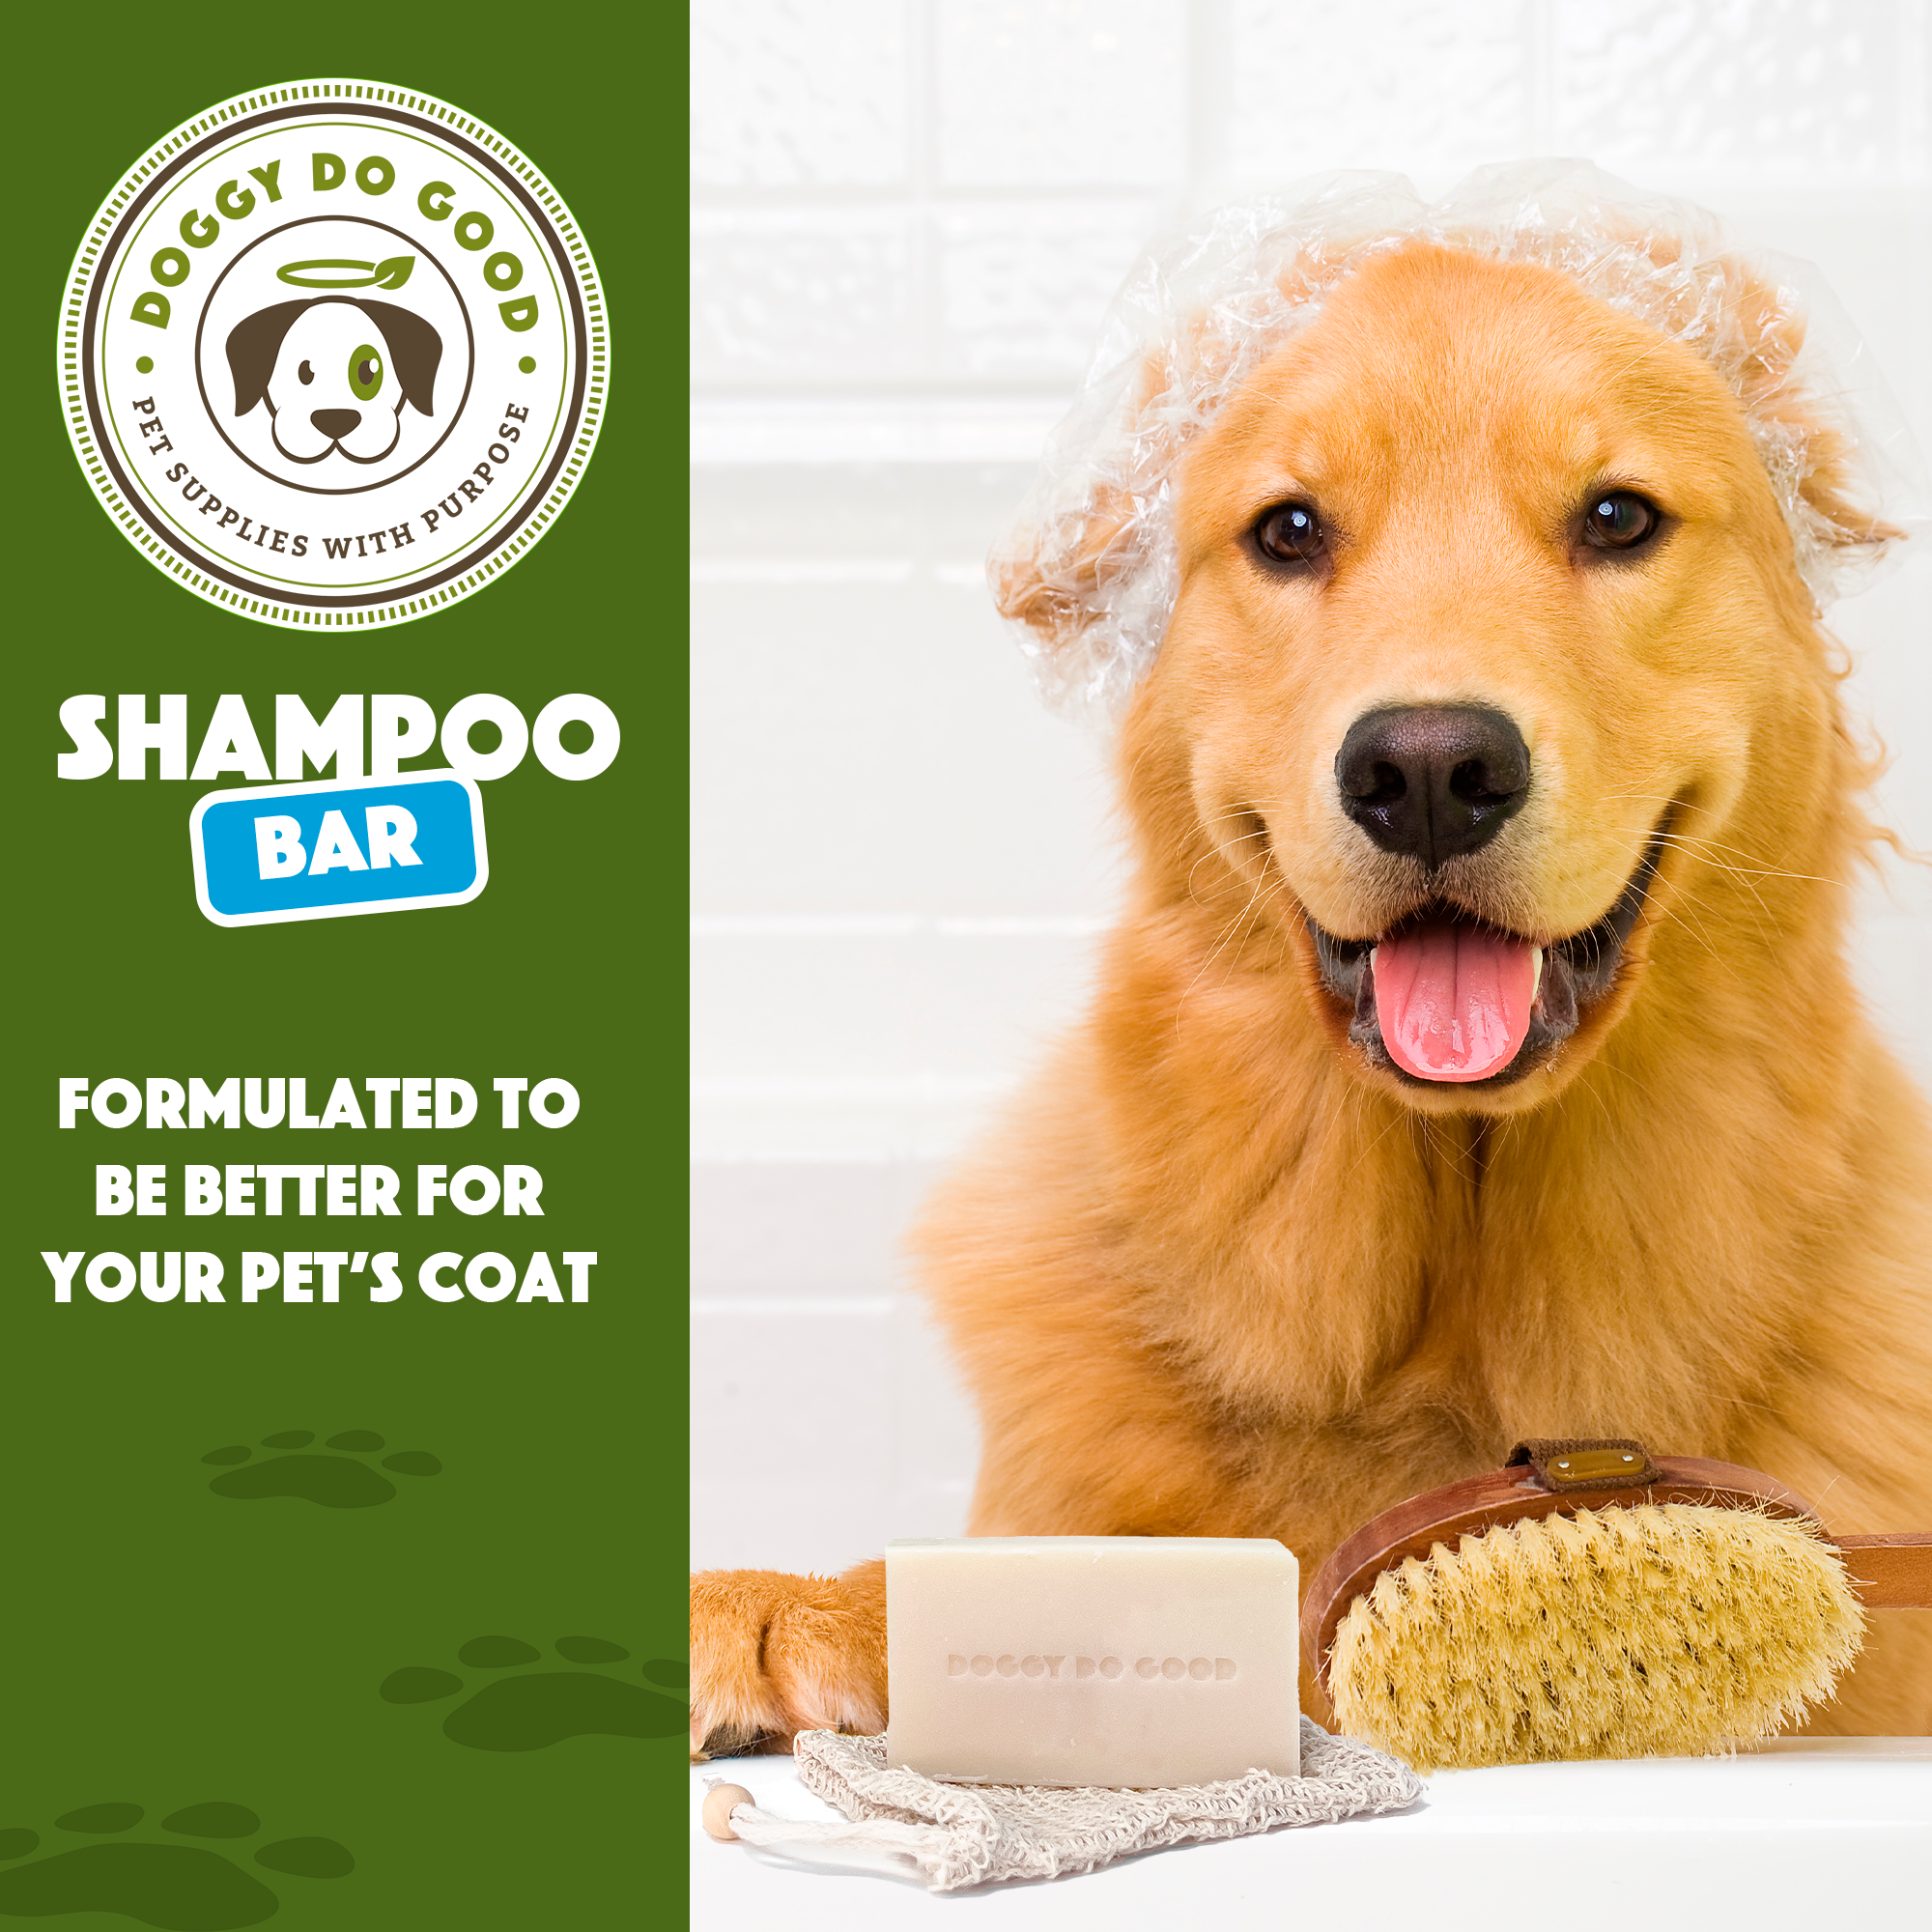 Dog Shampoo Bar - Protective Formula